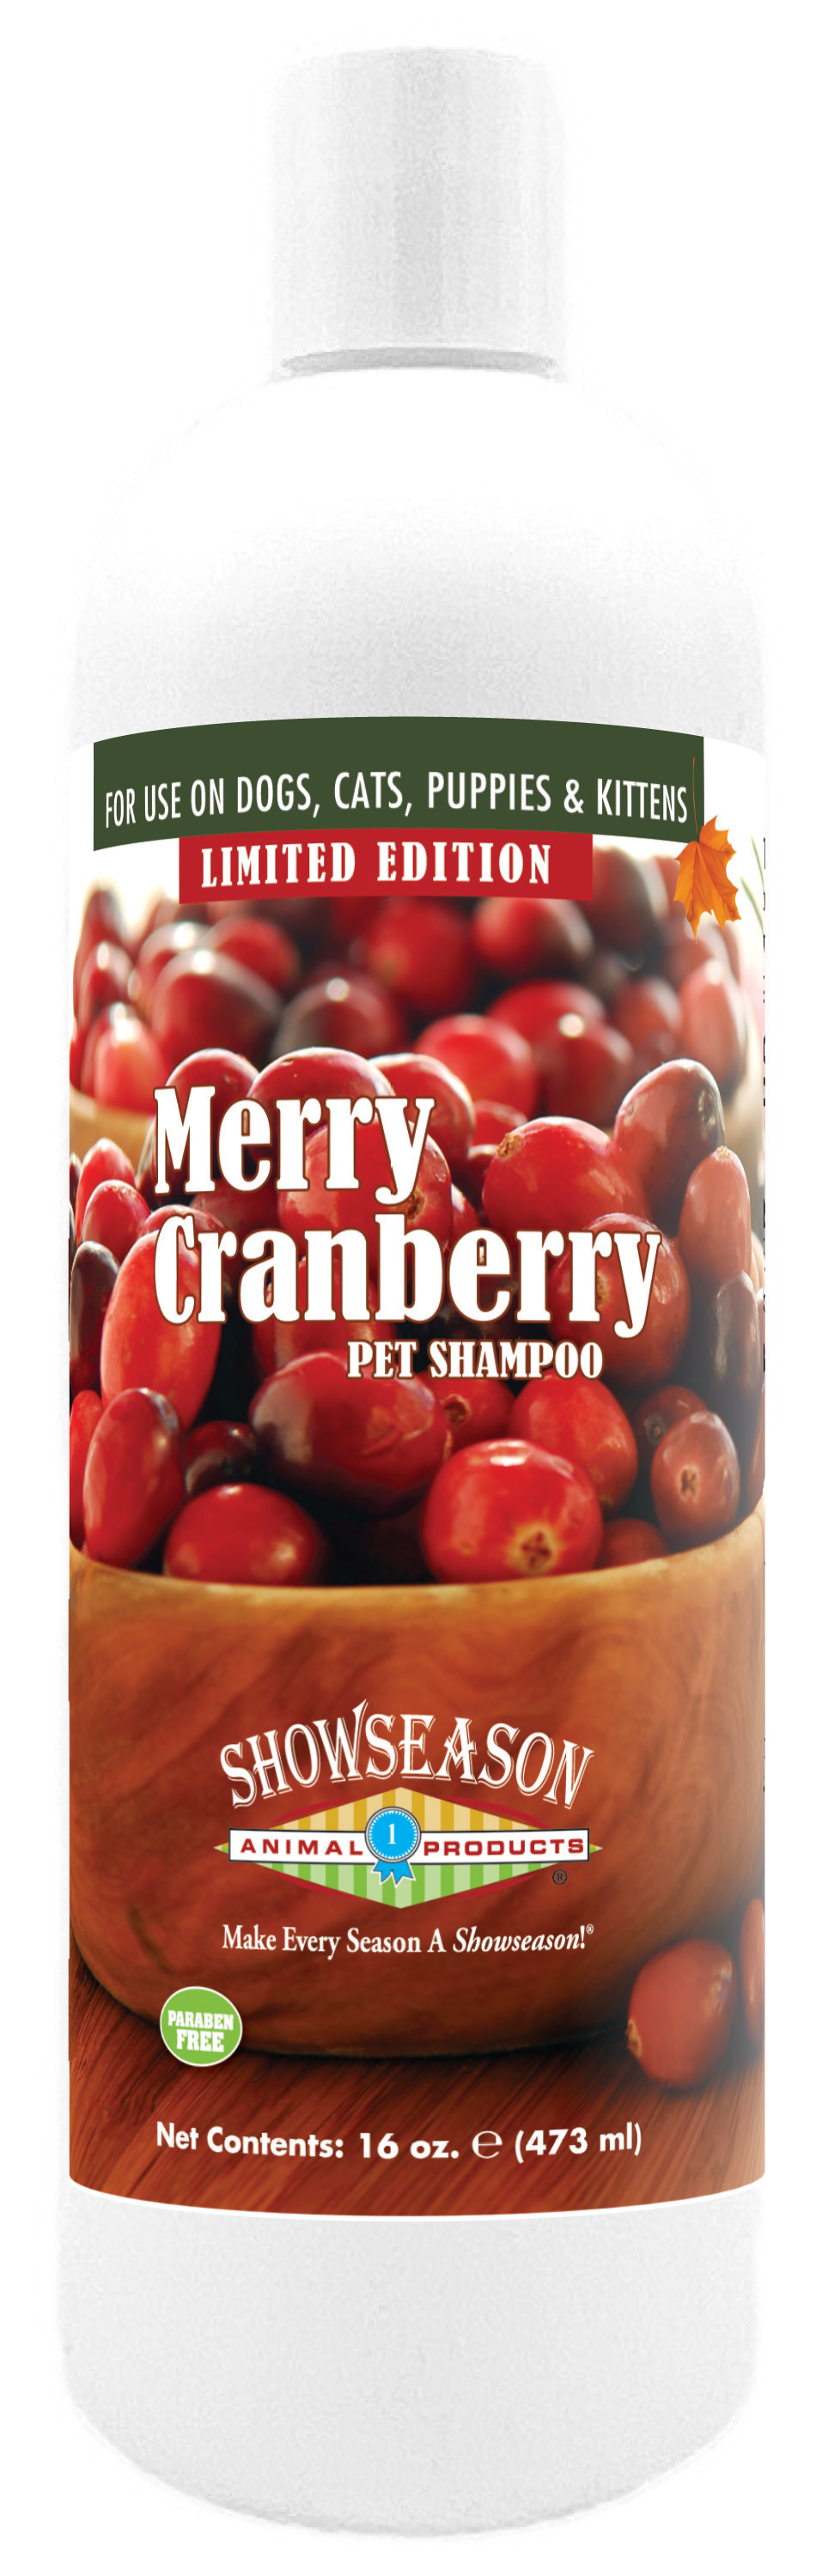 Merry Cranberry Pet Shampoo